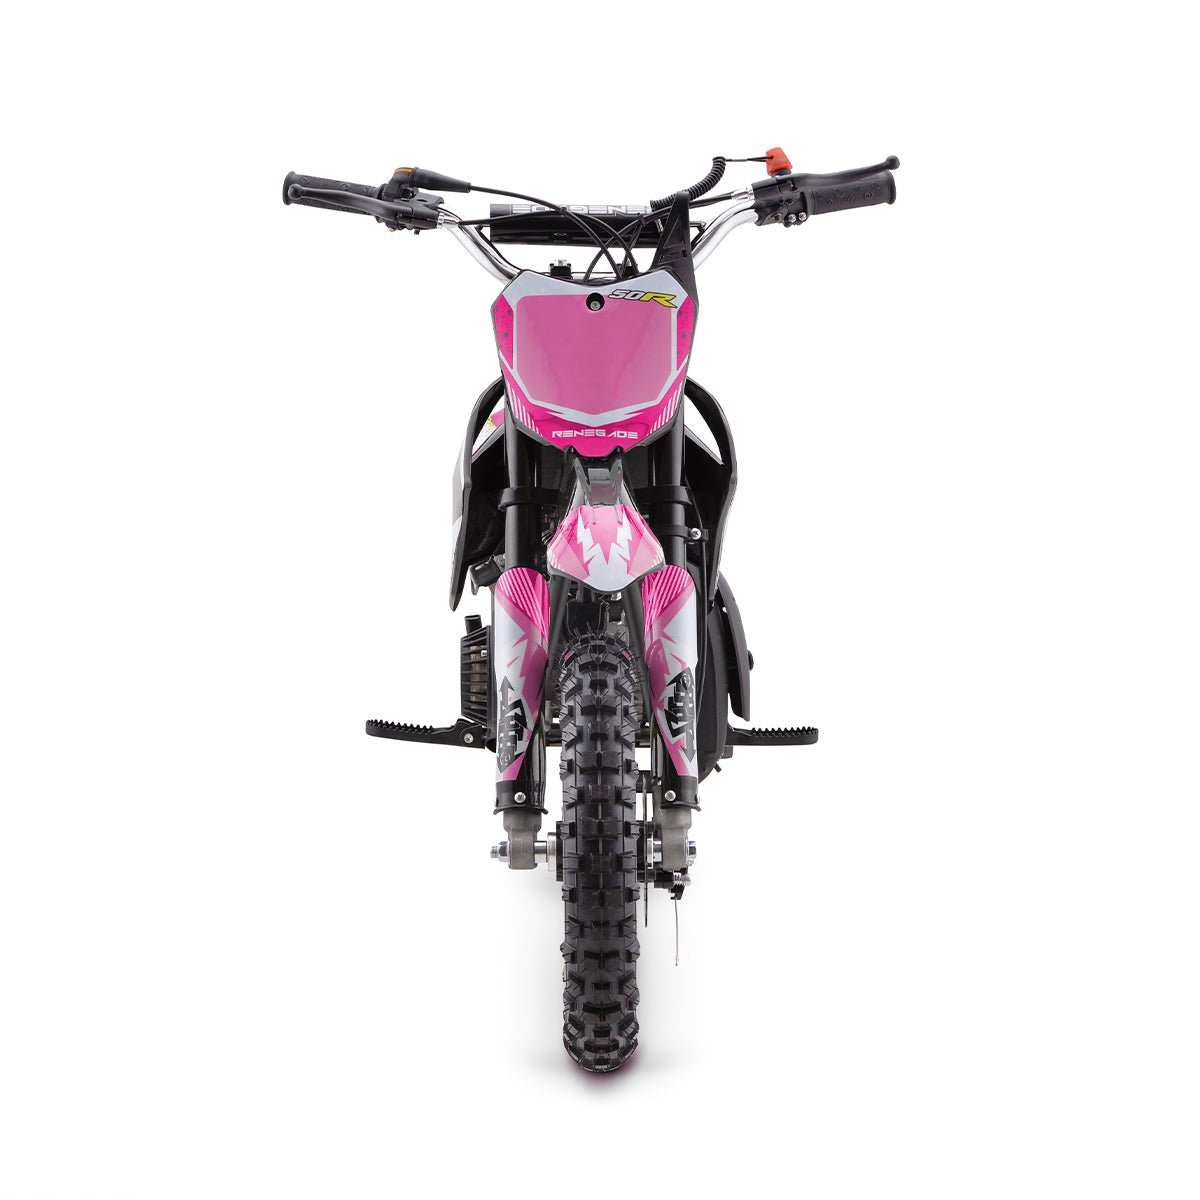 Renegade 50R 49cc Petrol Mini Dirt Bike - Pink